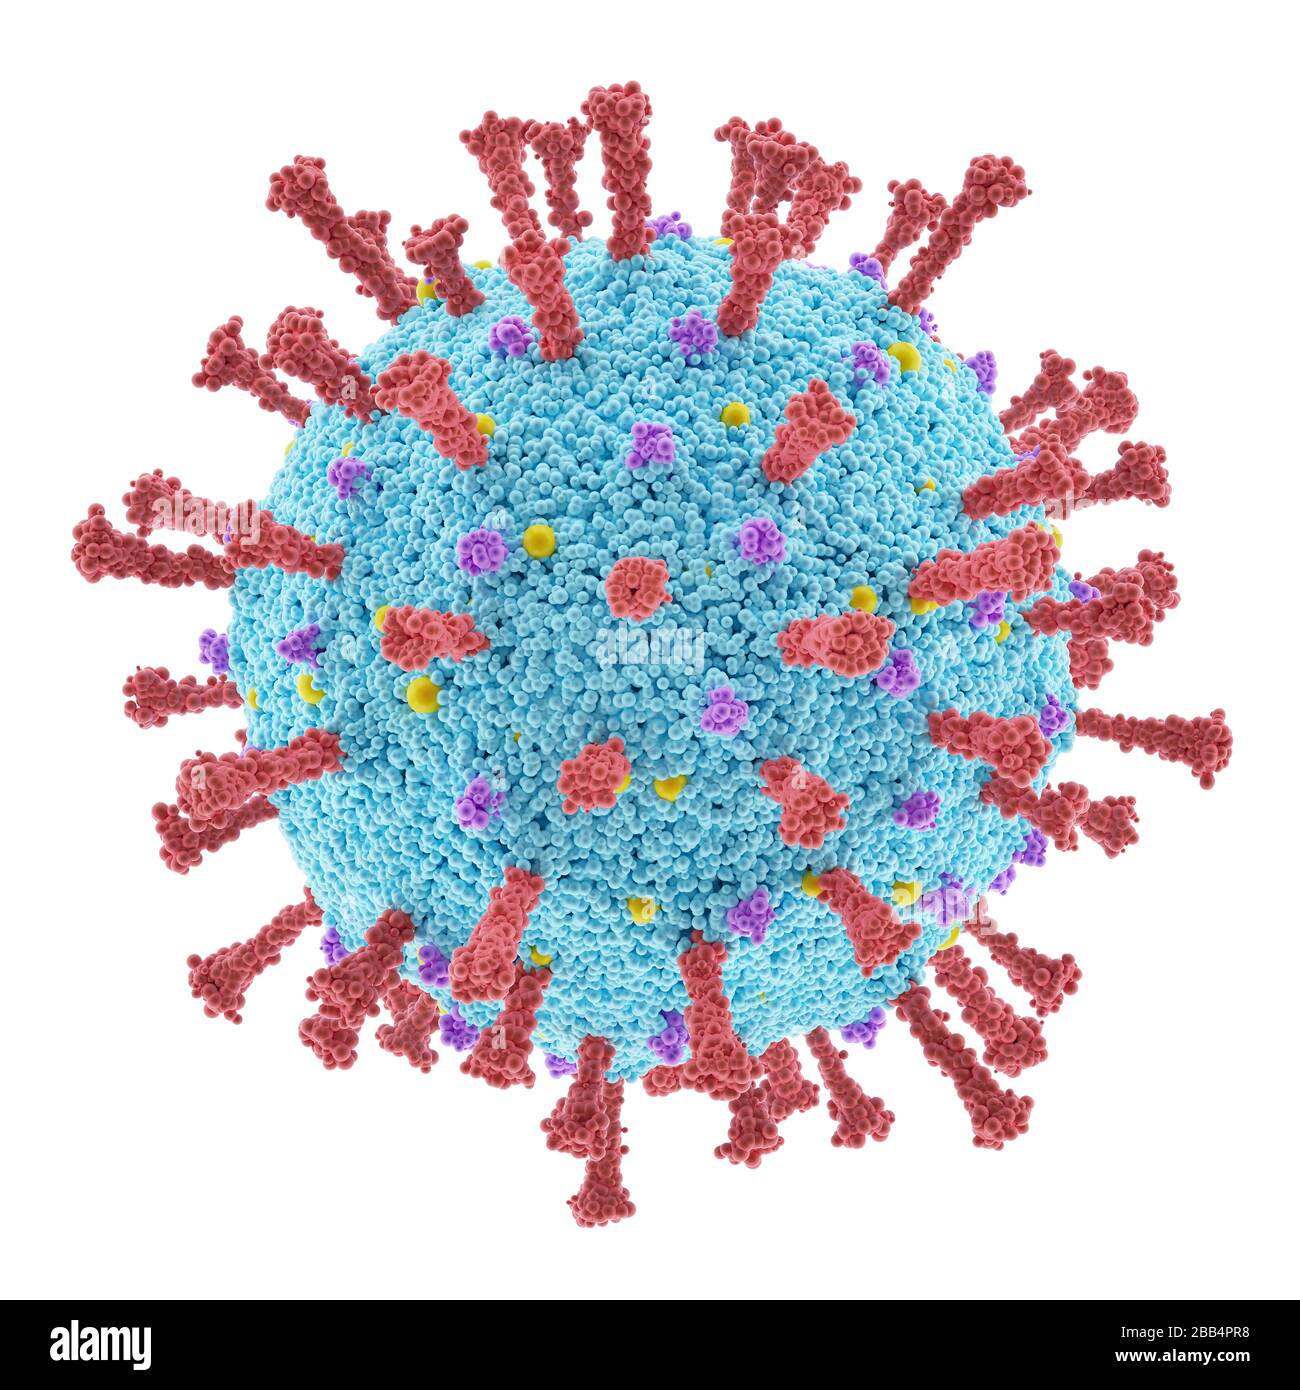 Virus konzeptionell mit Clipping-Pfad enthalten. Die Struktur eines Virus. Covid-19, Coronavirus, Influenza, HIV. Konzeptbild von Infektionskrankheiten. 3 Stockfoto